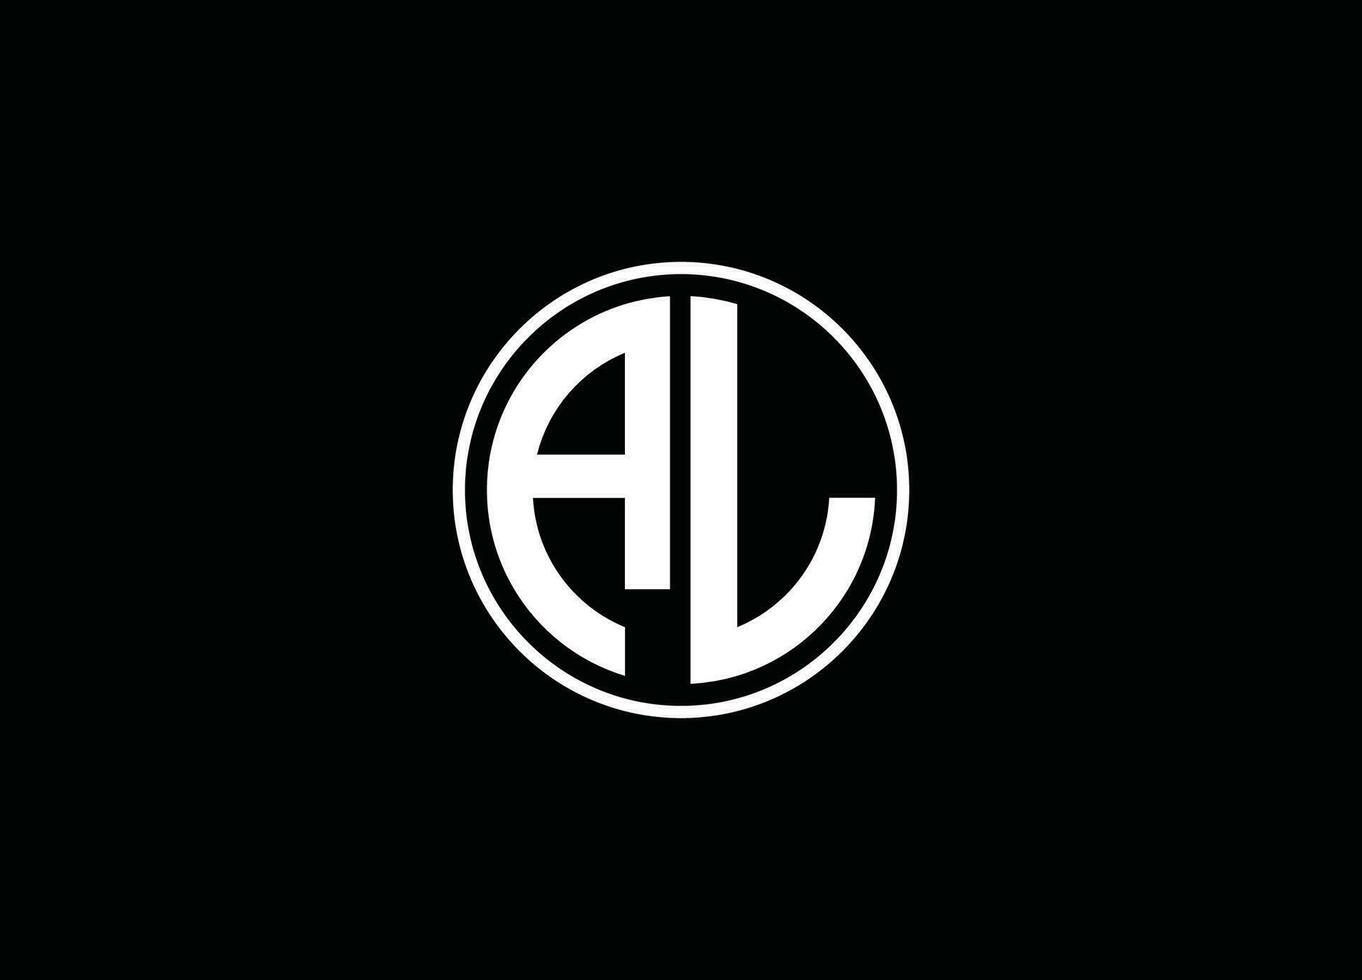 AL letter logo, A AND L ,L A logo, AL initials logo, LA monogram logo,, LOGO design vector